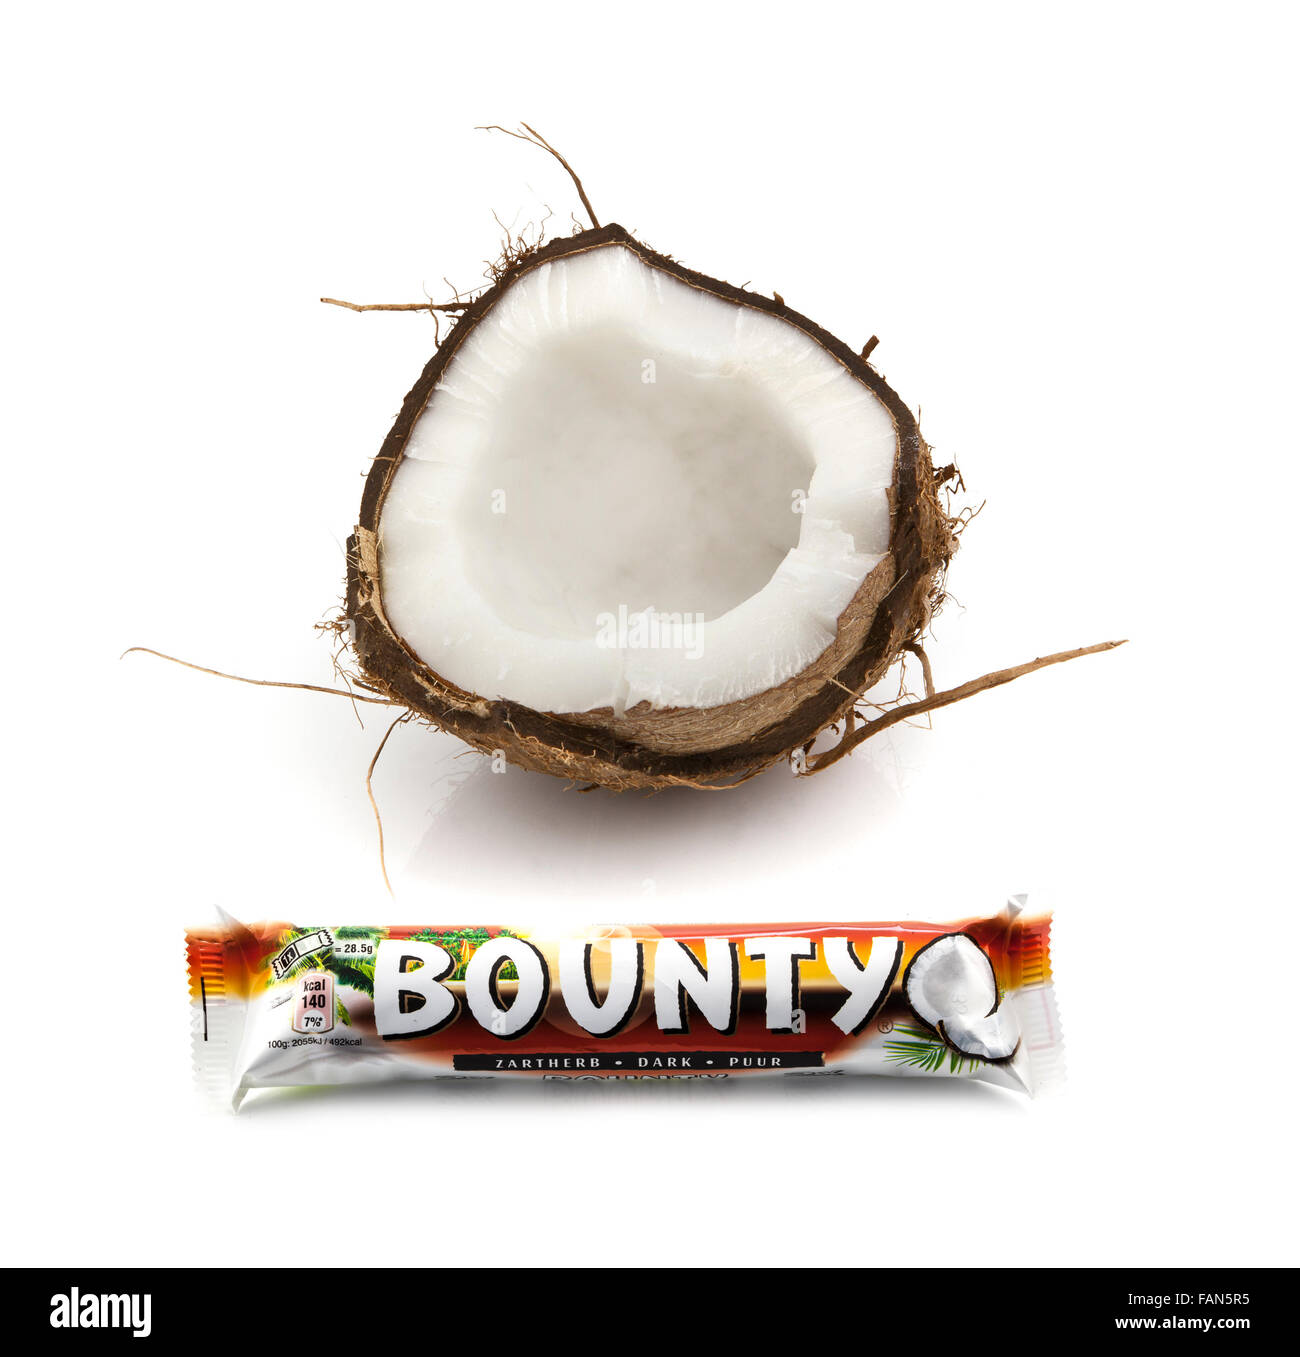 Noix de Coco Chocolat Bounty bar avec une demi-noix de coco sur un fond blanc Banque D'Images